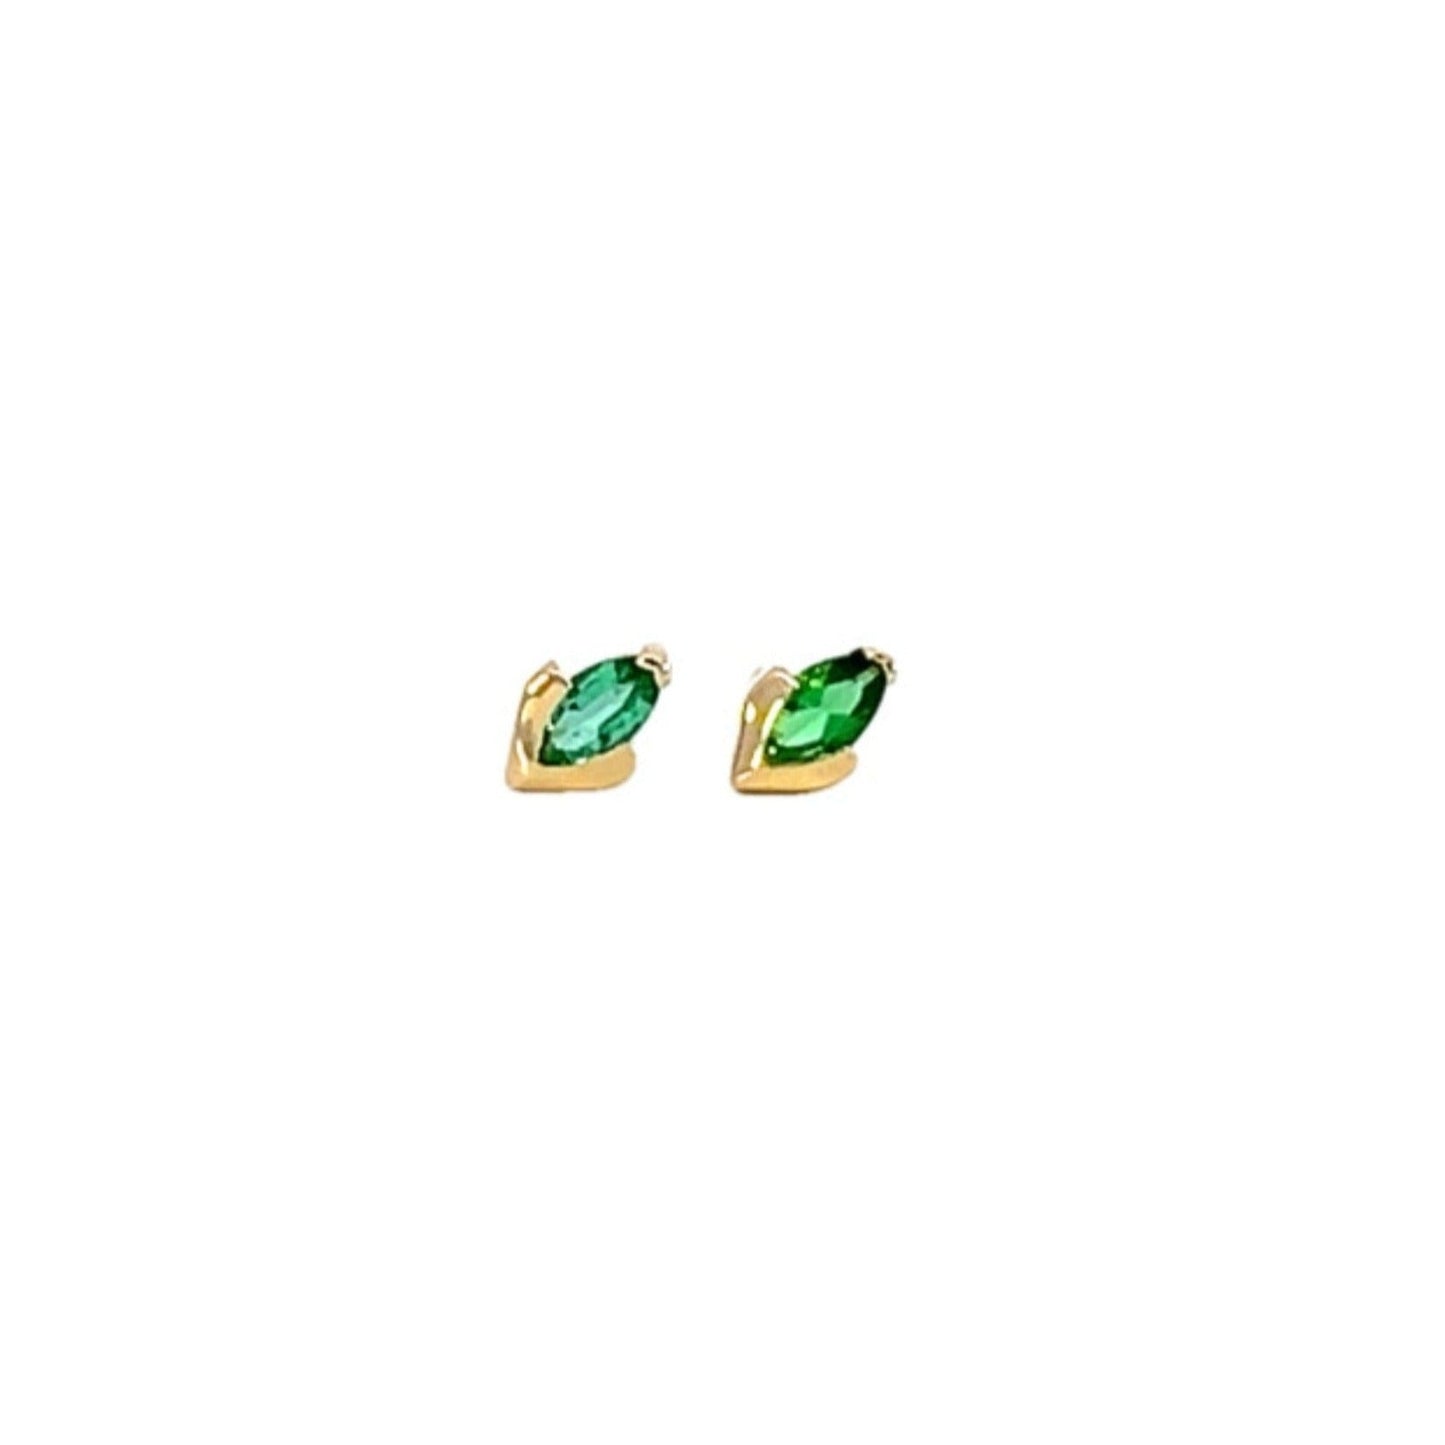 Marq Stud Earrings - Emerald (single stud)